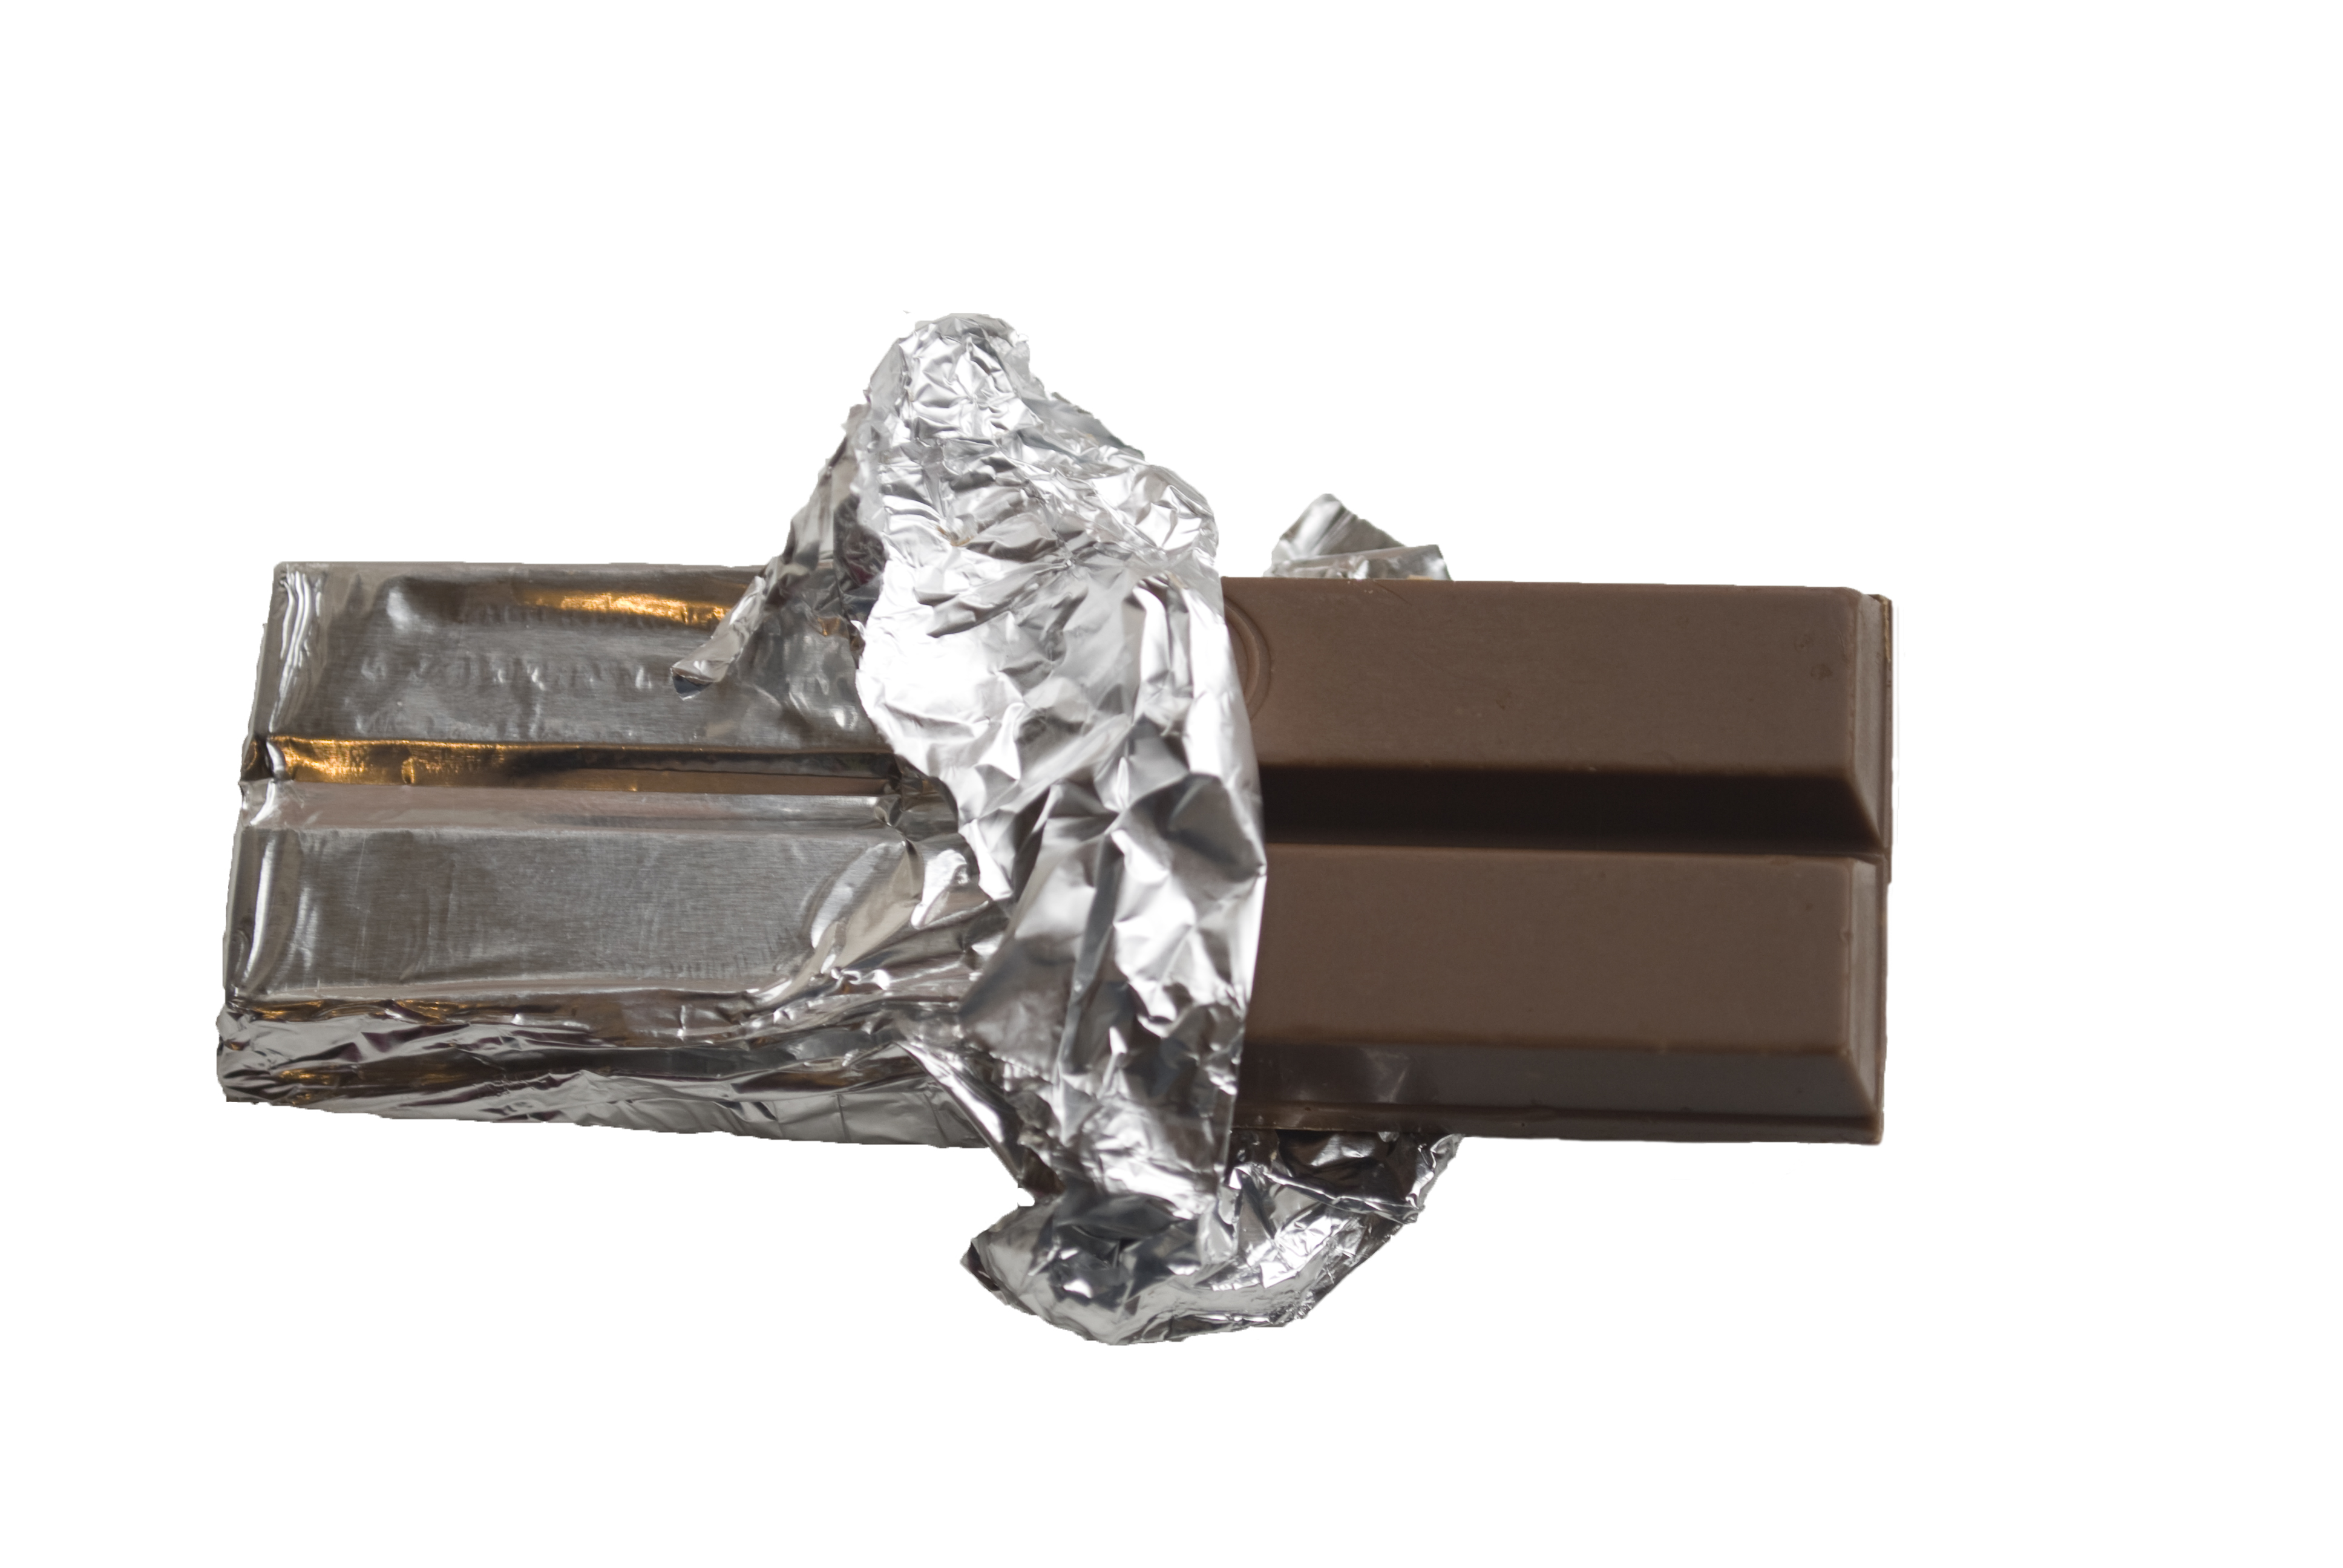 hur många kalorier innehåller en chokladbit